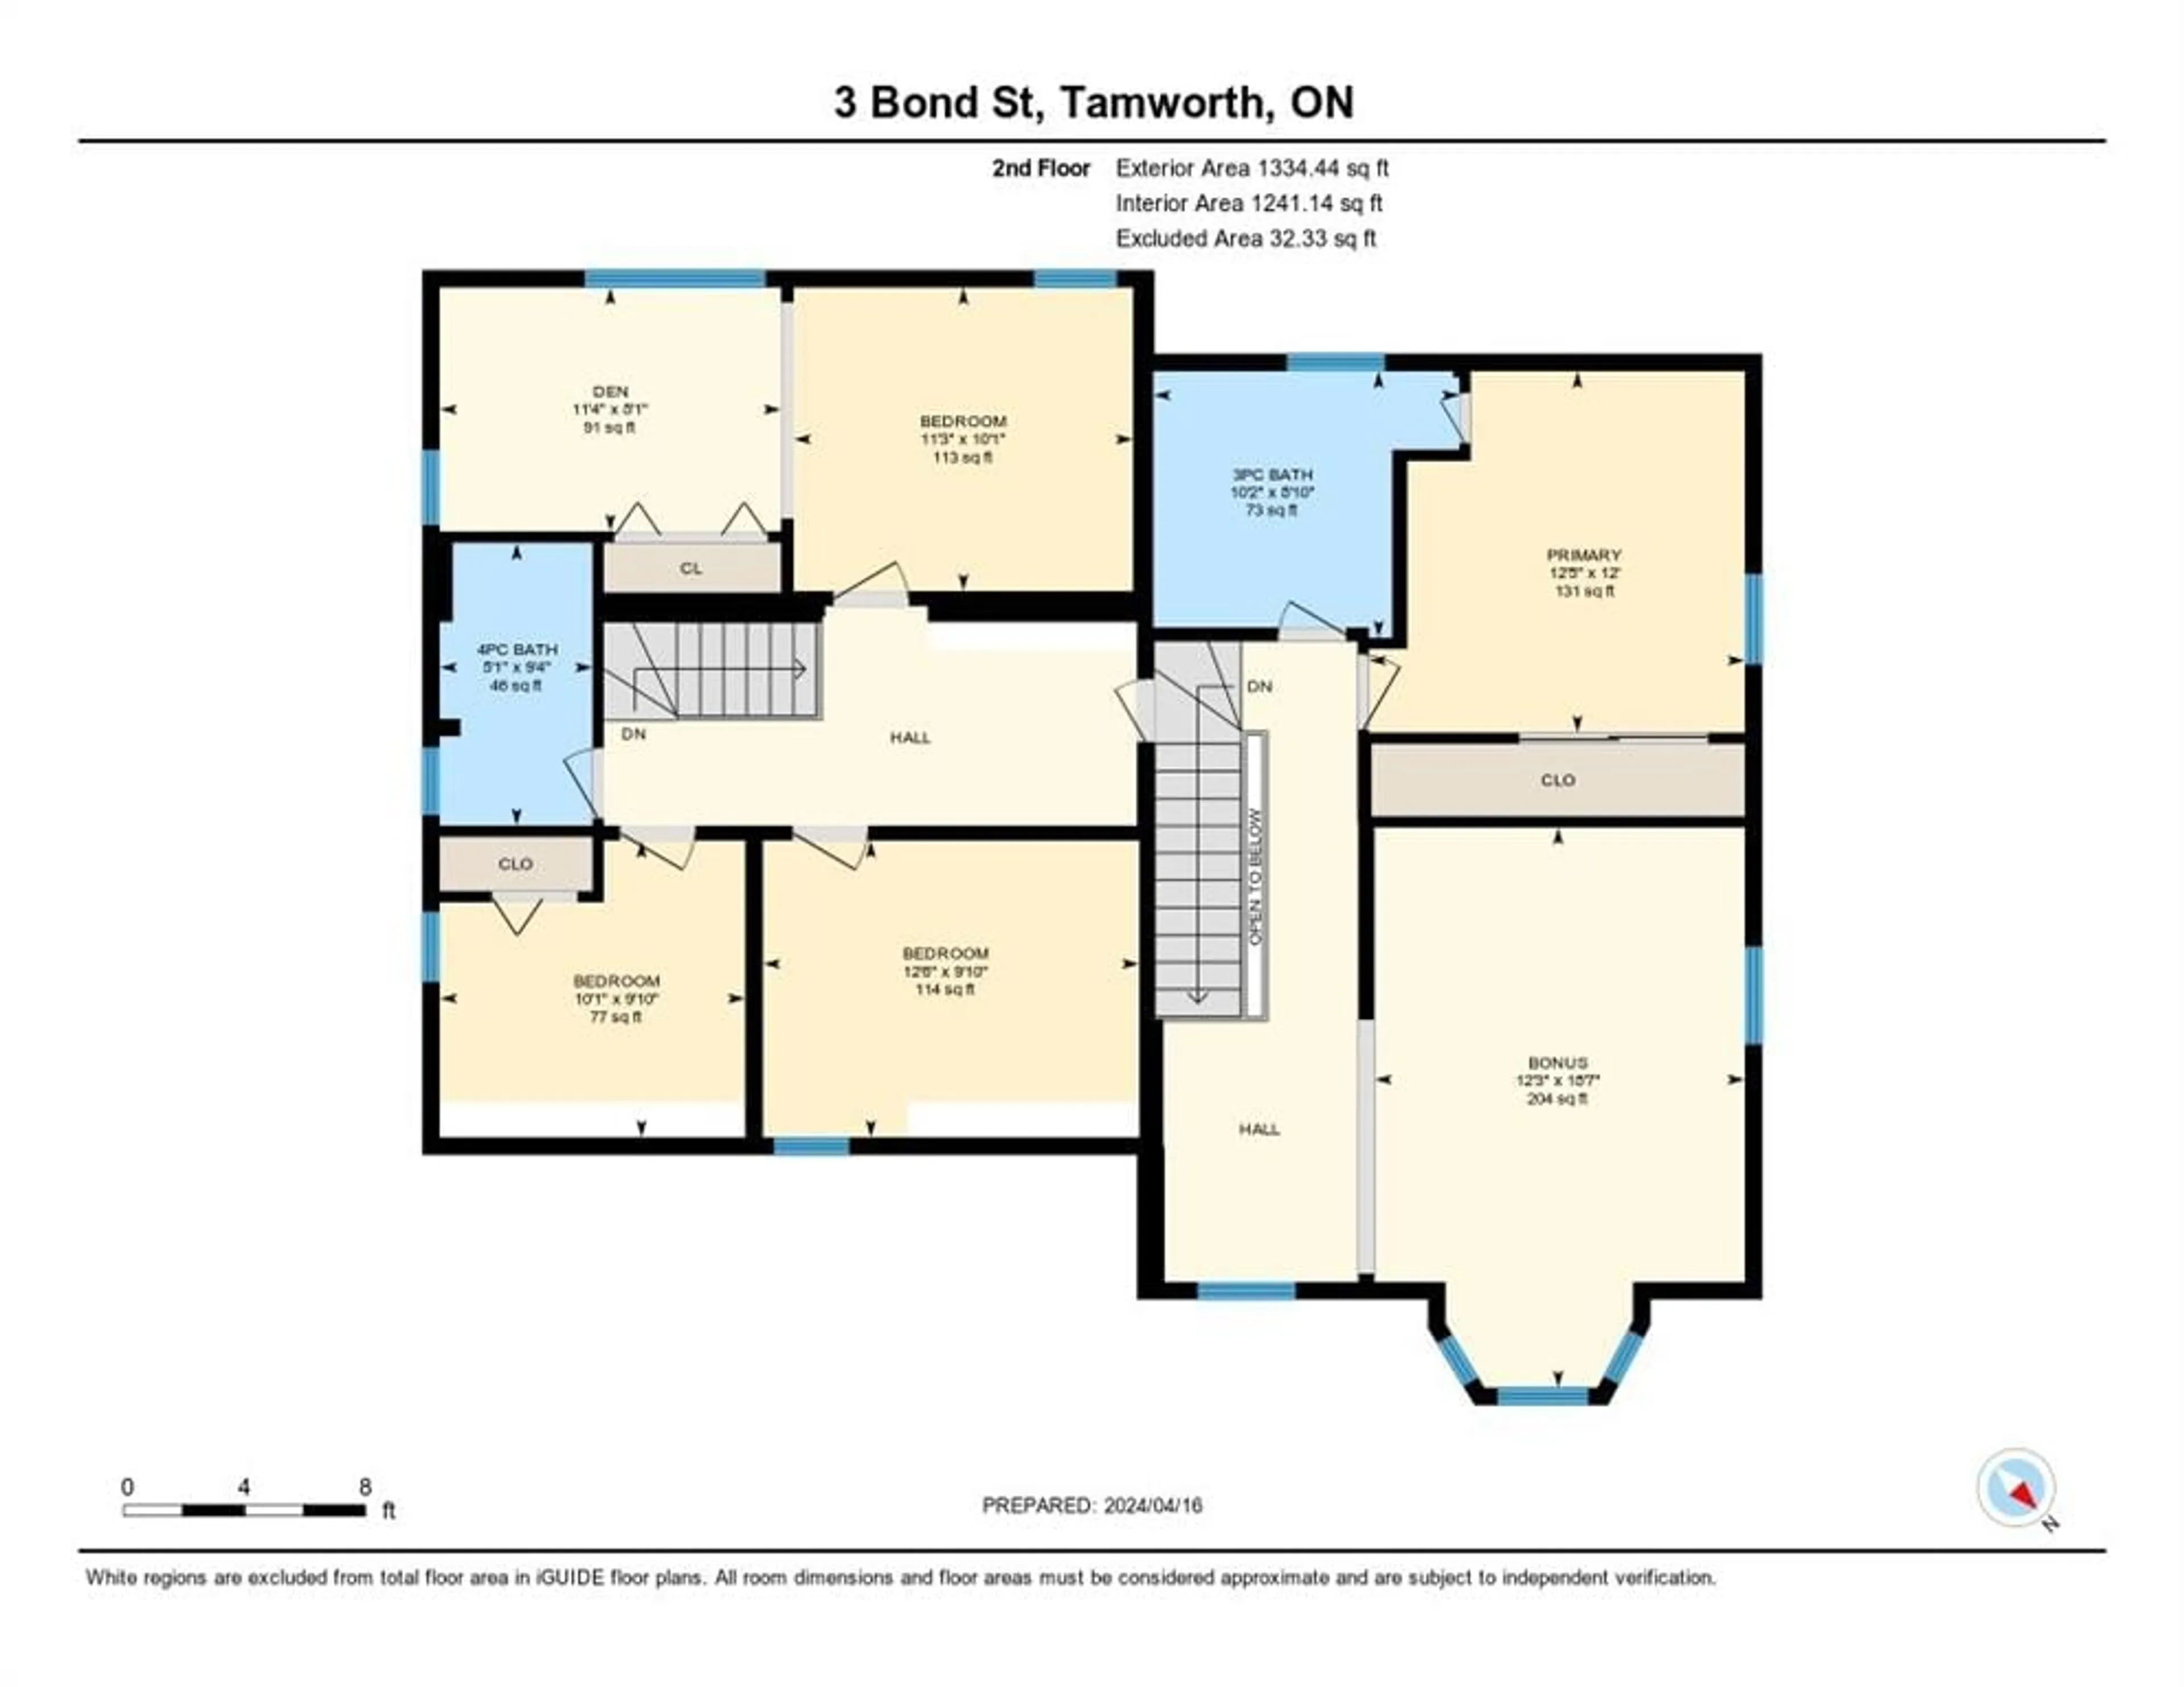 Floor plan for 3 Bond St, Tamworth Ontario K0K 3G0